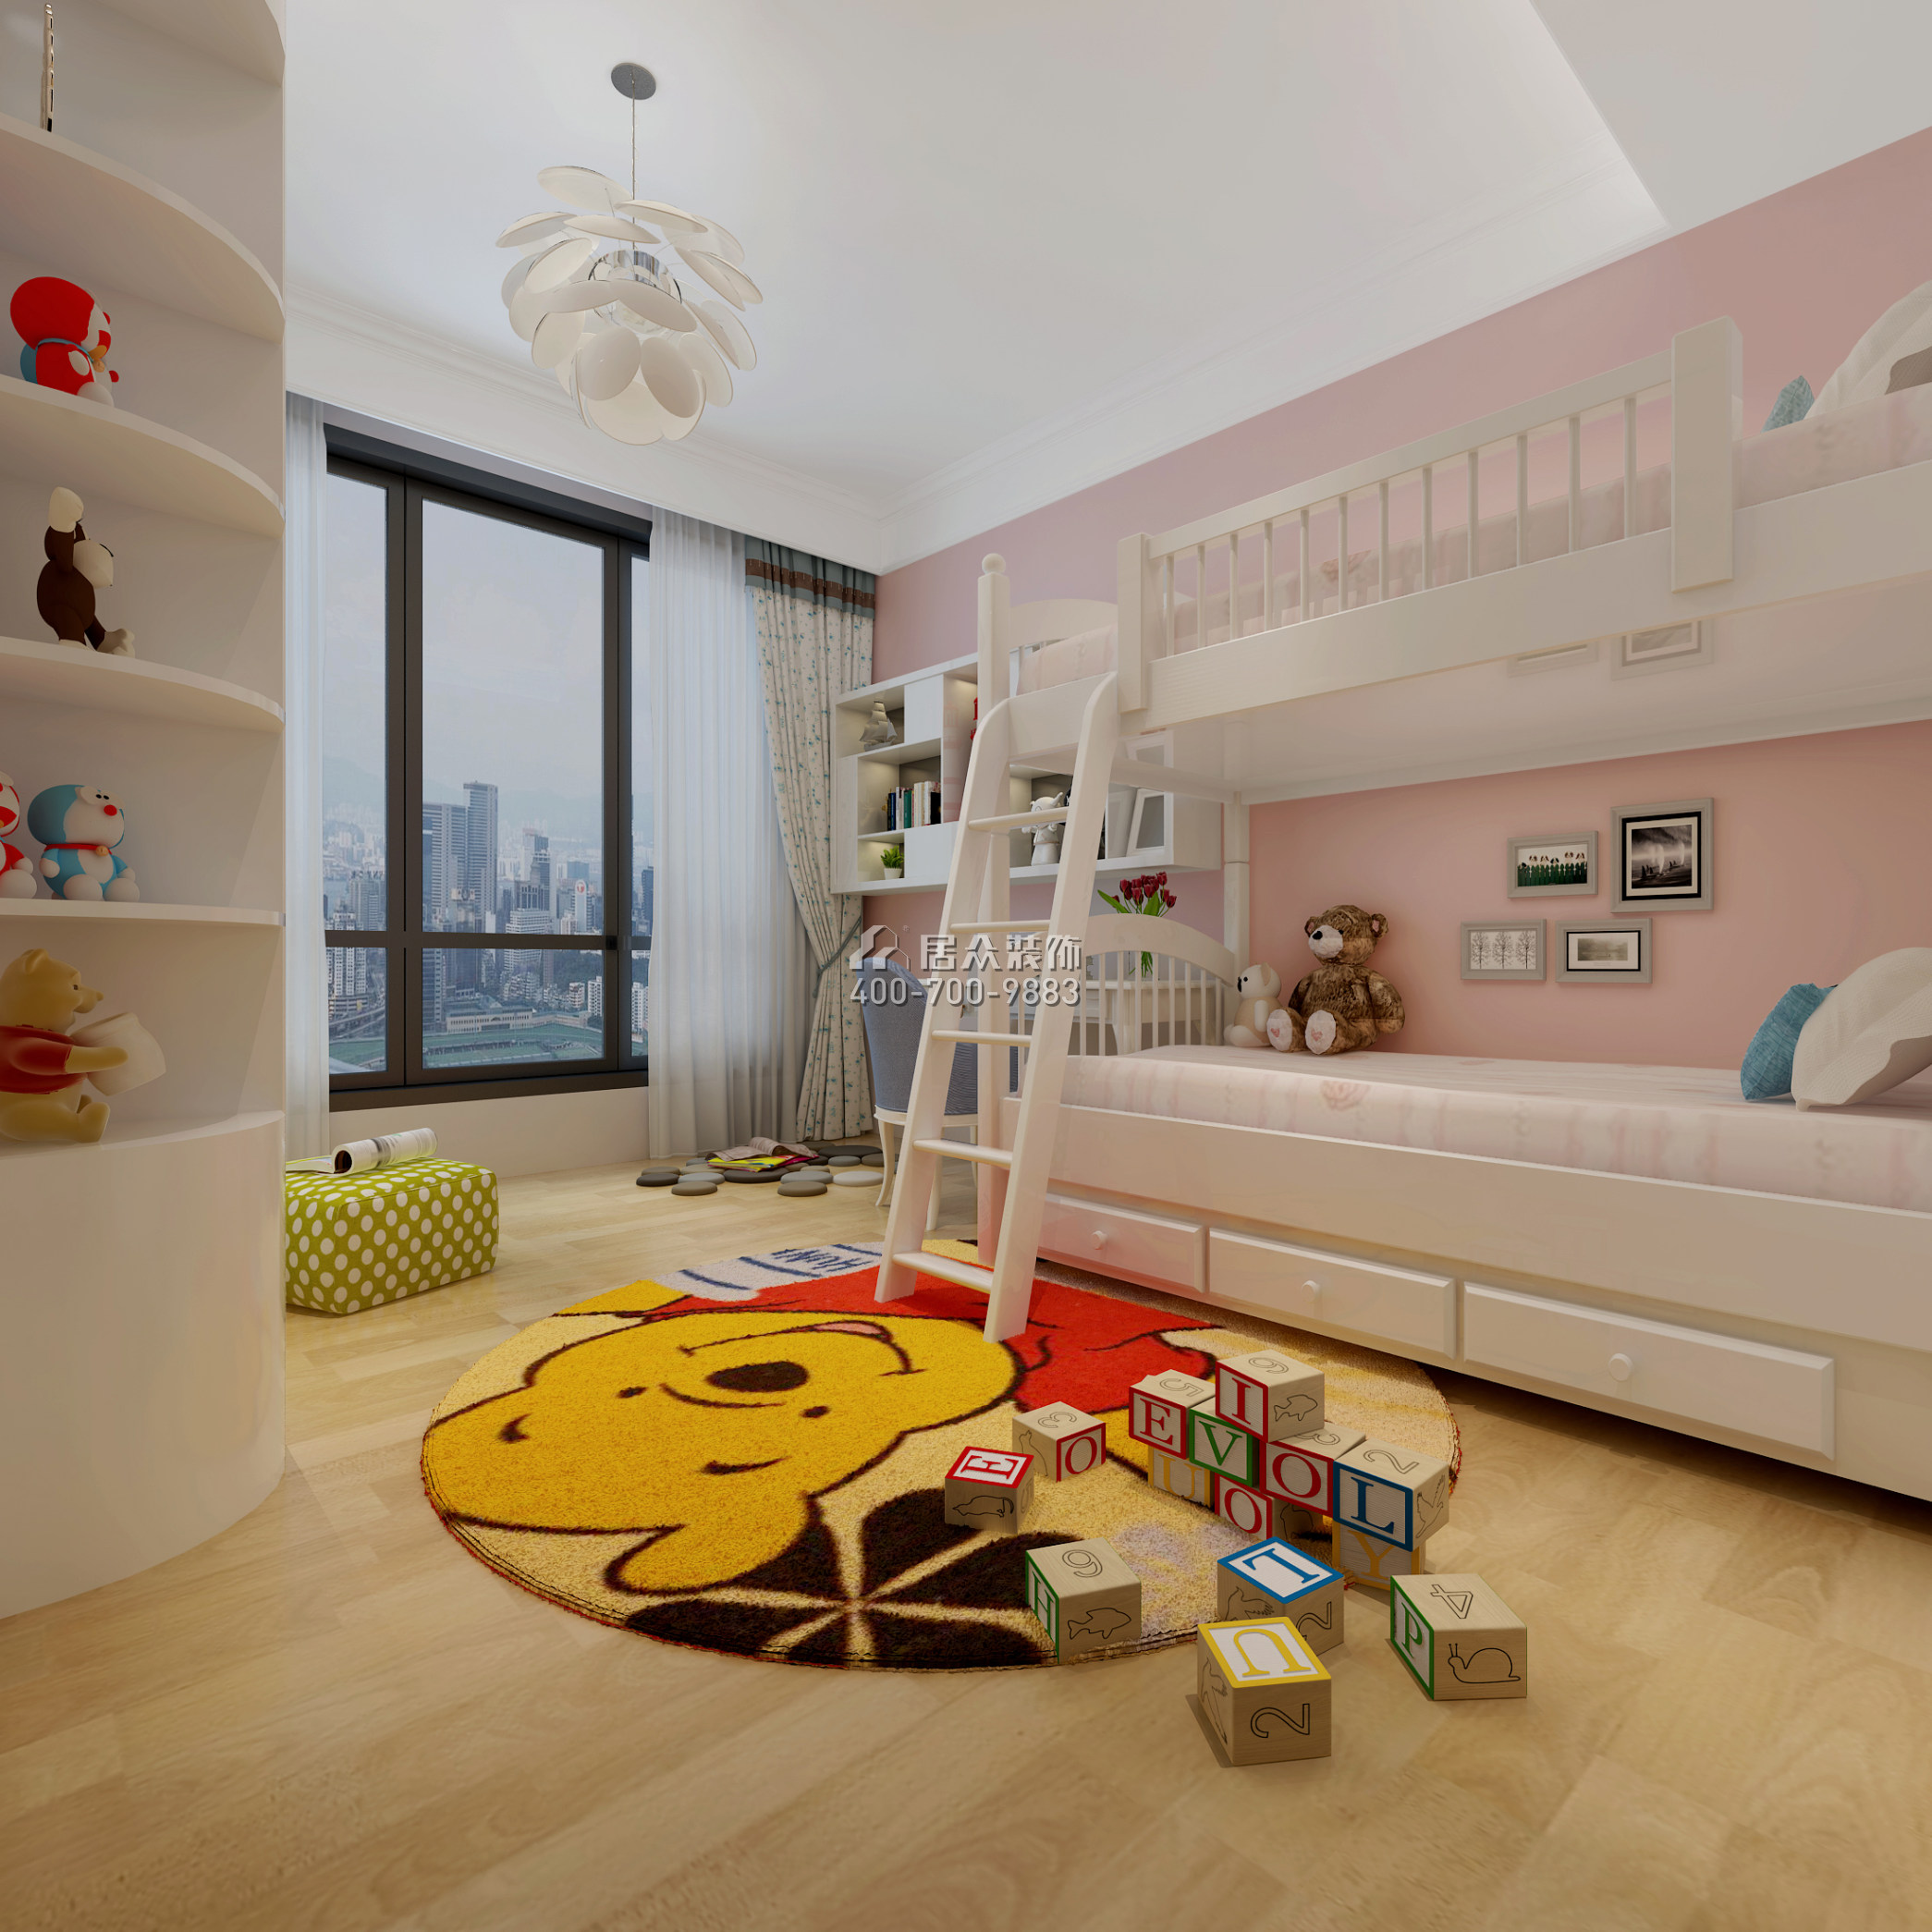 万科金域滨江180平方米其他风格平层户型儿童房装修效果图